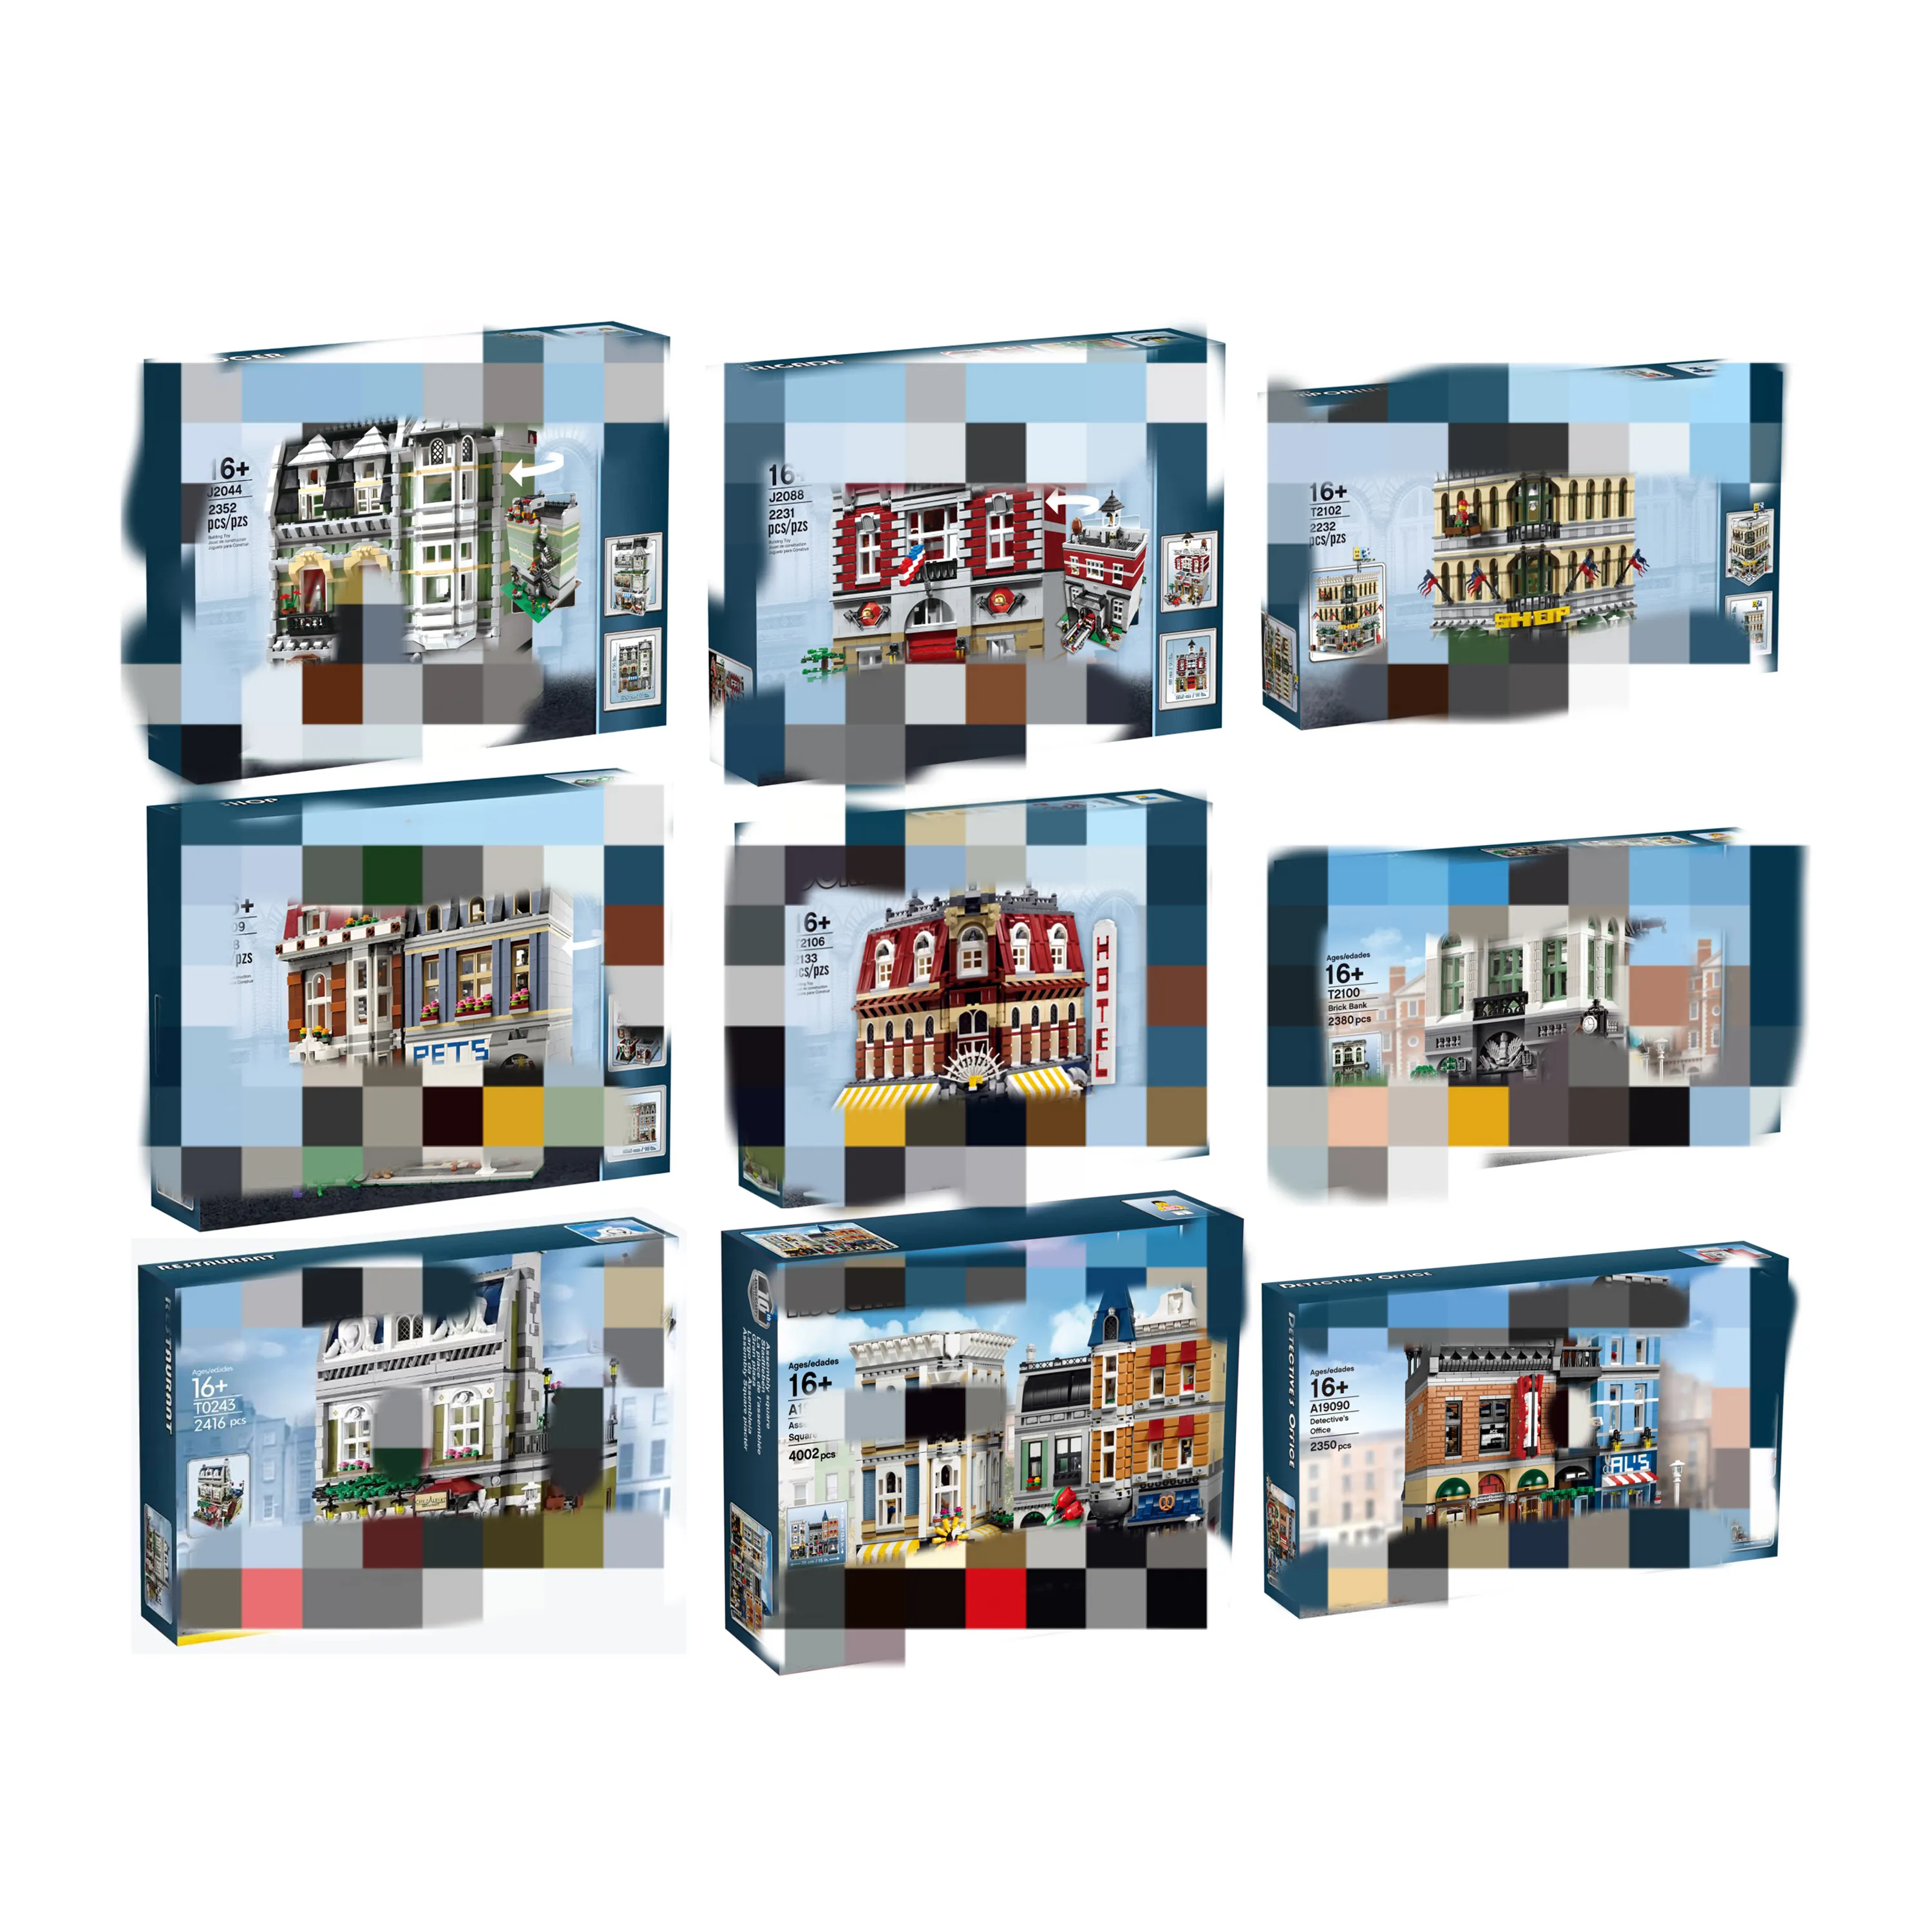 호환 모듈 형 MINI 빌딩 블록 벽돌 현대 저택 10270 모델 피규어 도시 스트리트 뷰 어린이 선물 건물 만들기